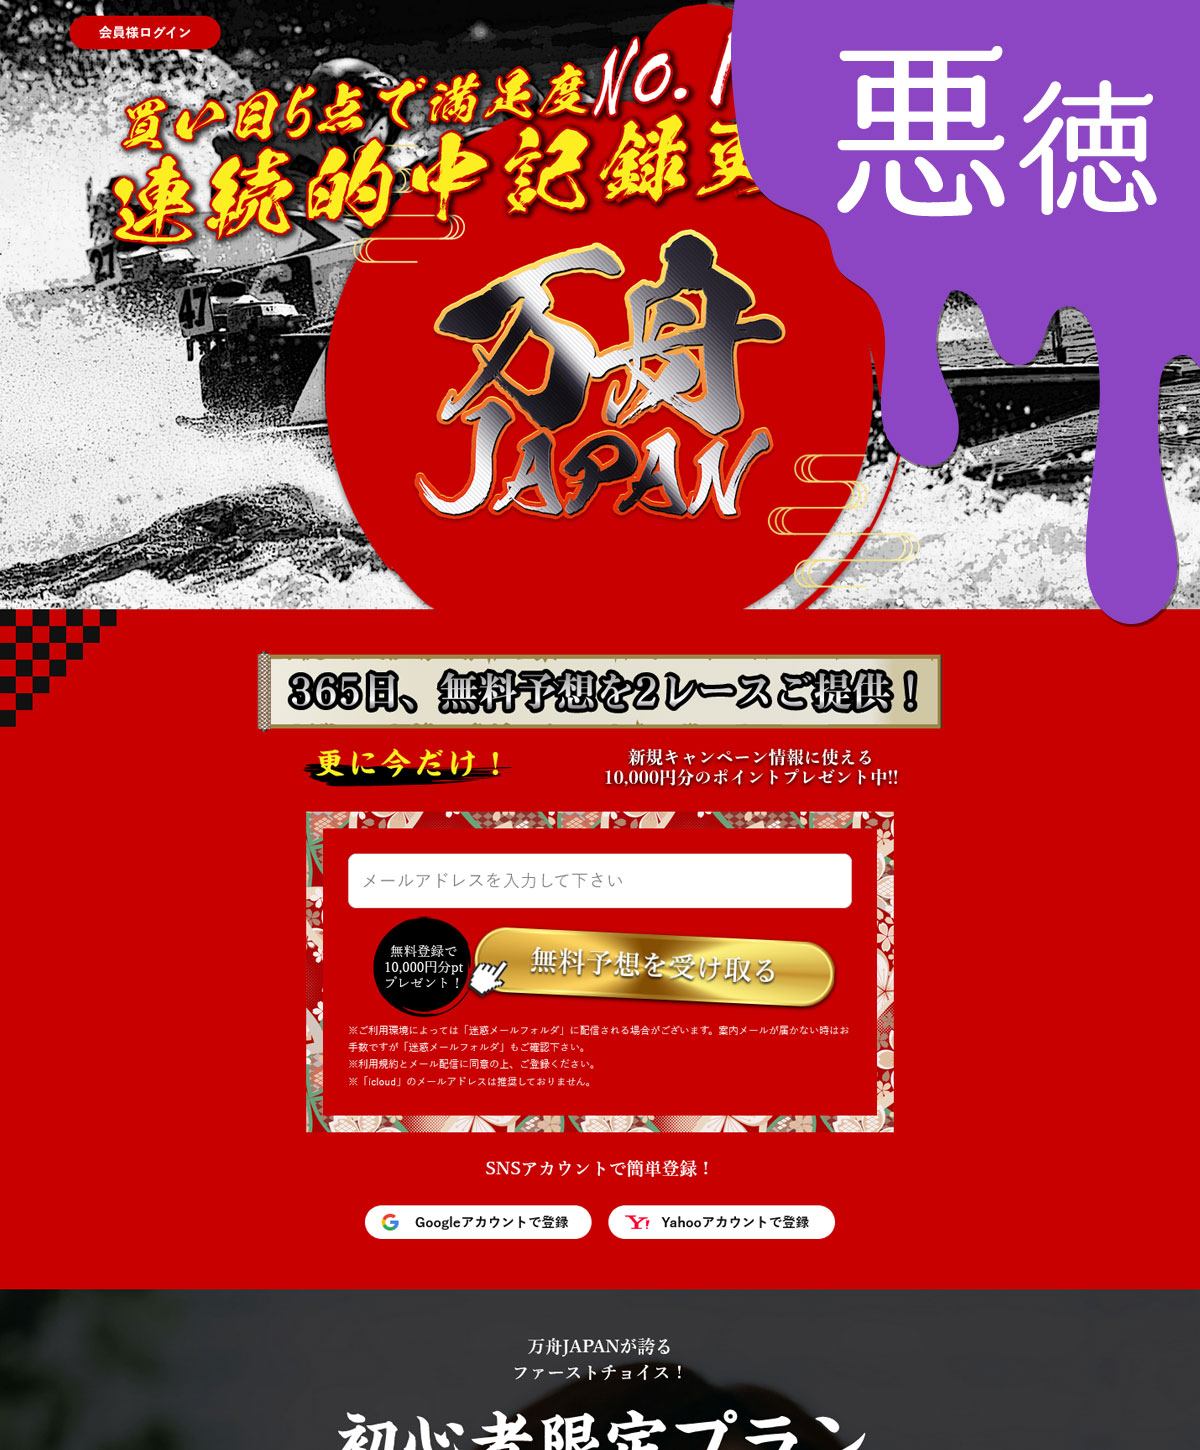 悪徳 万舟JAPAN(ジャパン) 競艇予想サイトの中でも優良サイトなのか、悪徳サイトかを口コミなどからも検証